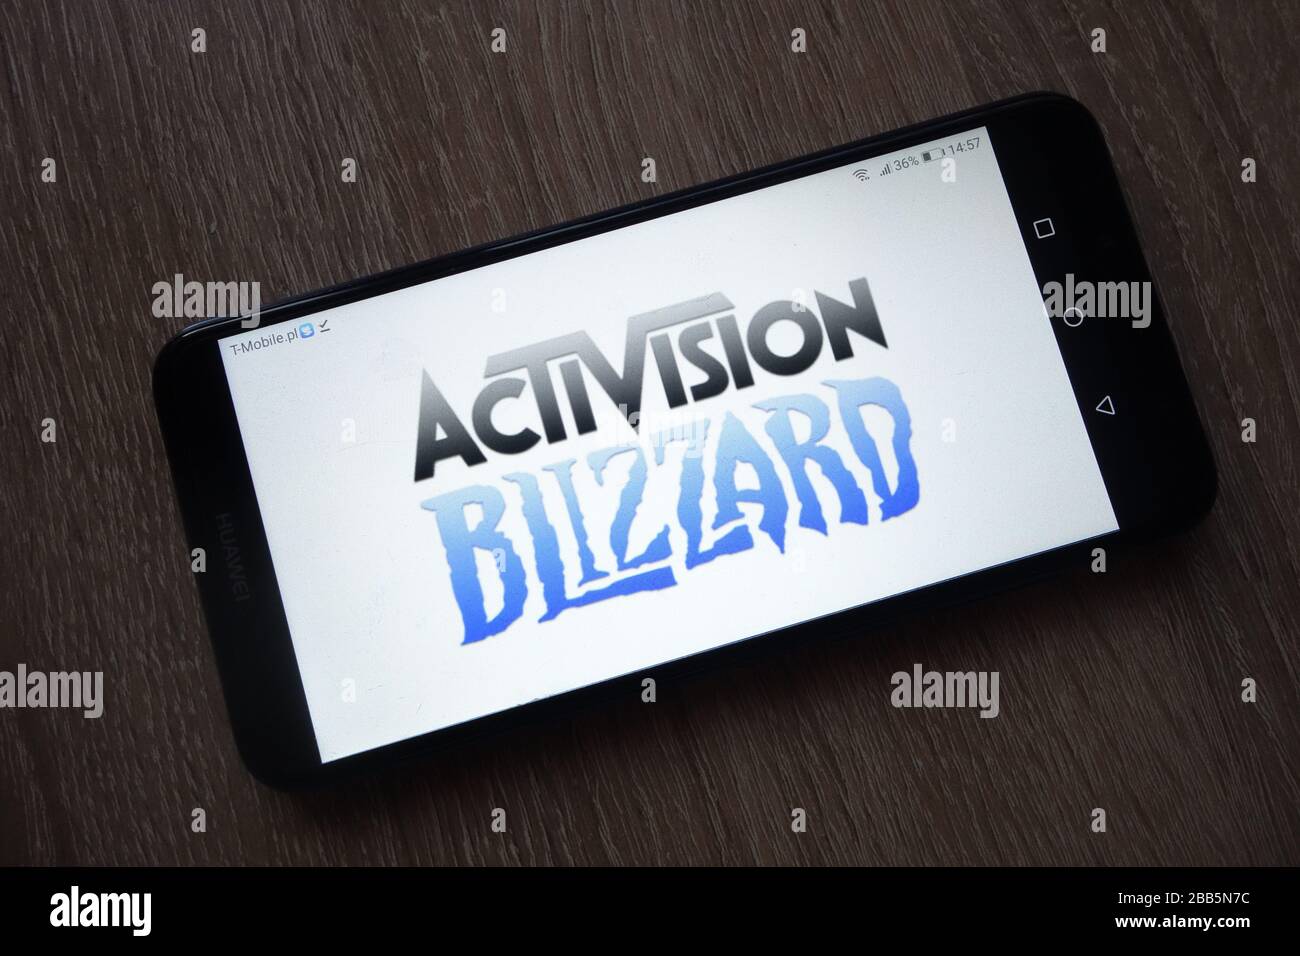 Das Logo von Activision Blizzard Inc. Wird auf dem Smartphone angezeigt Stockfoto